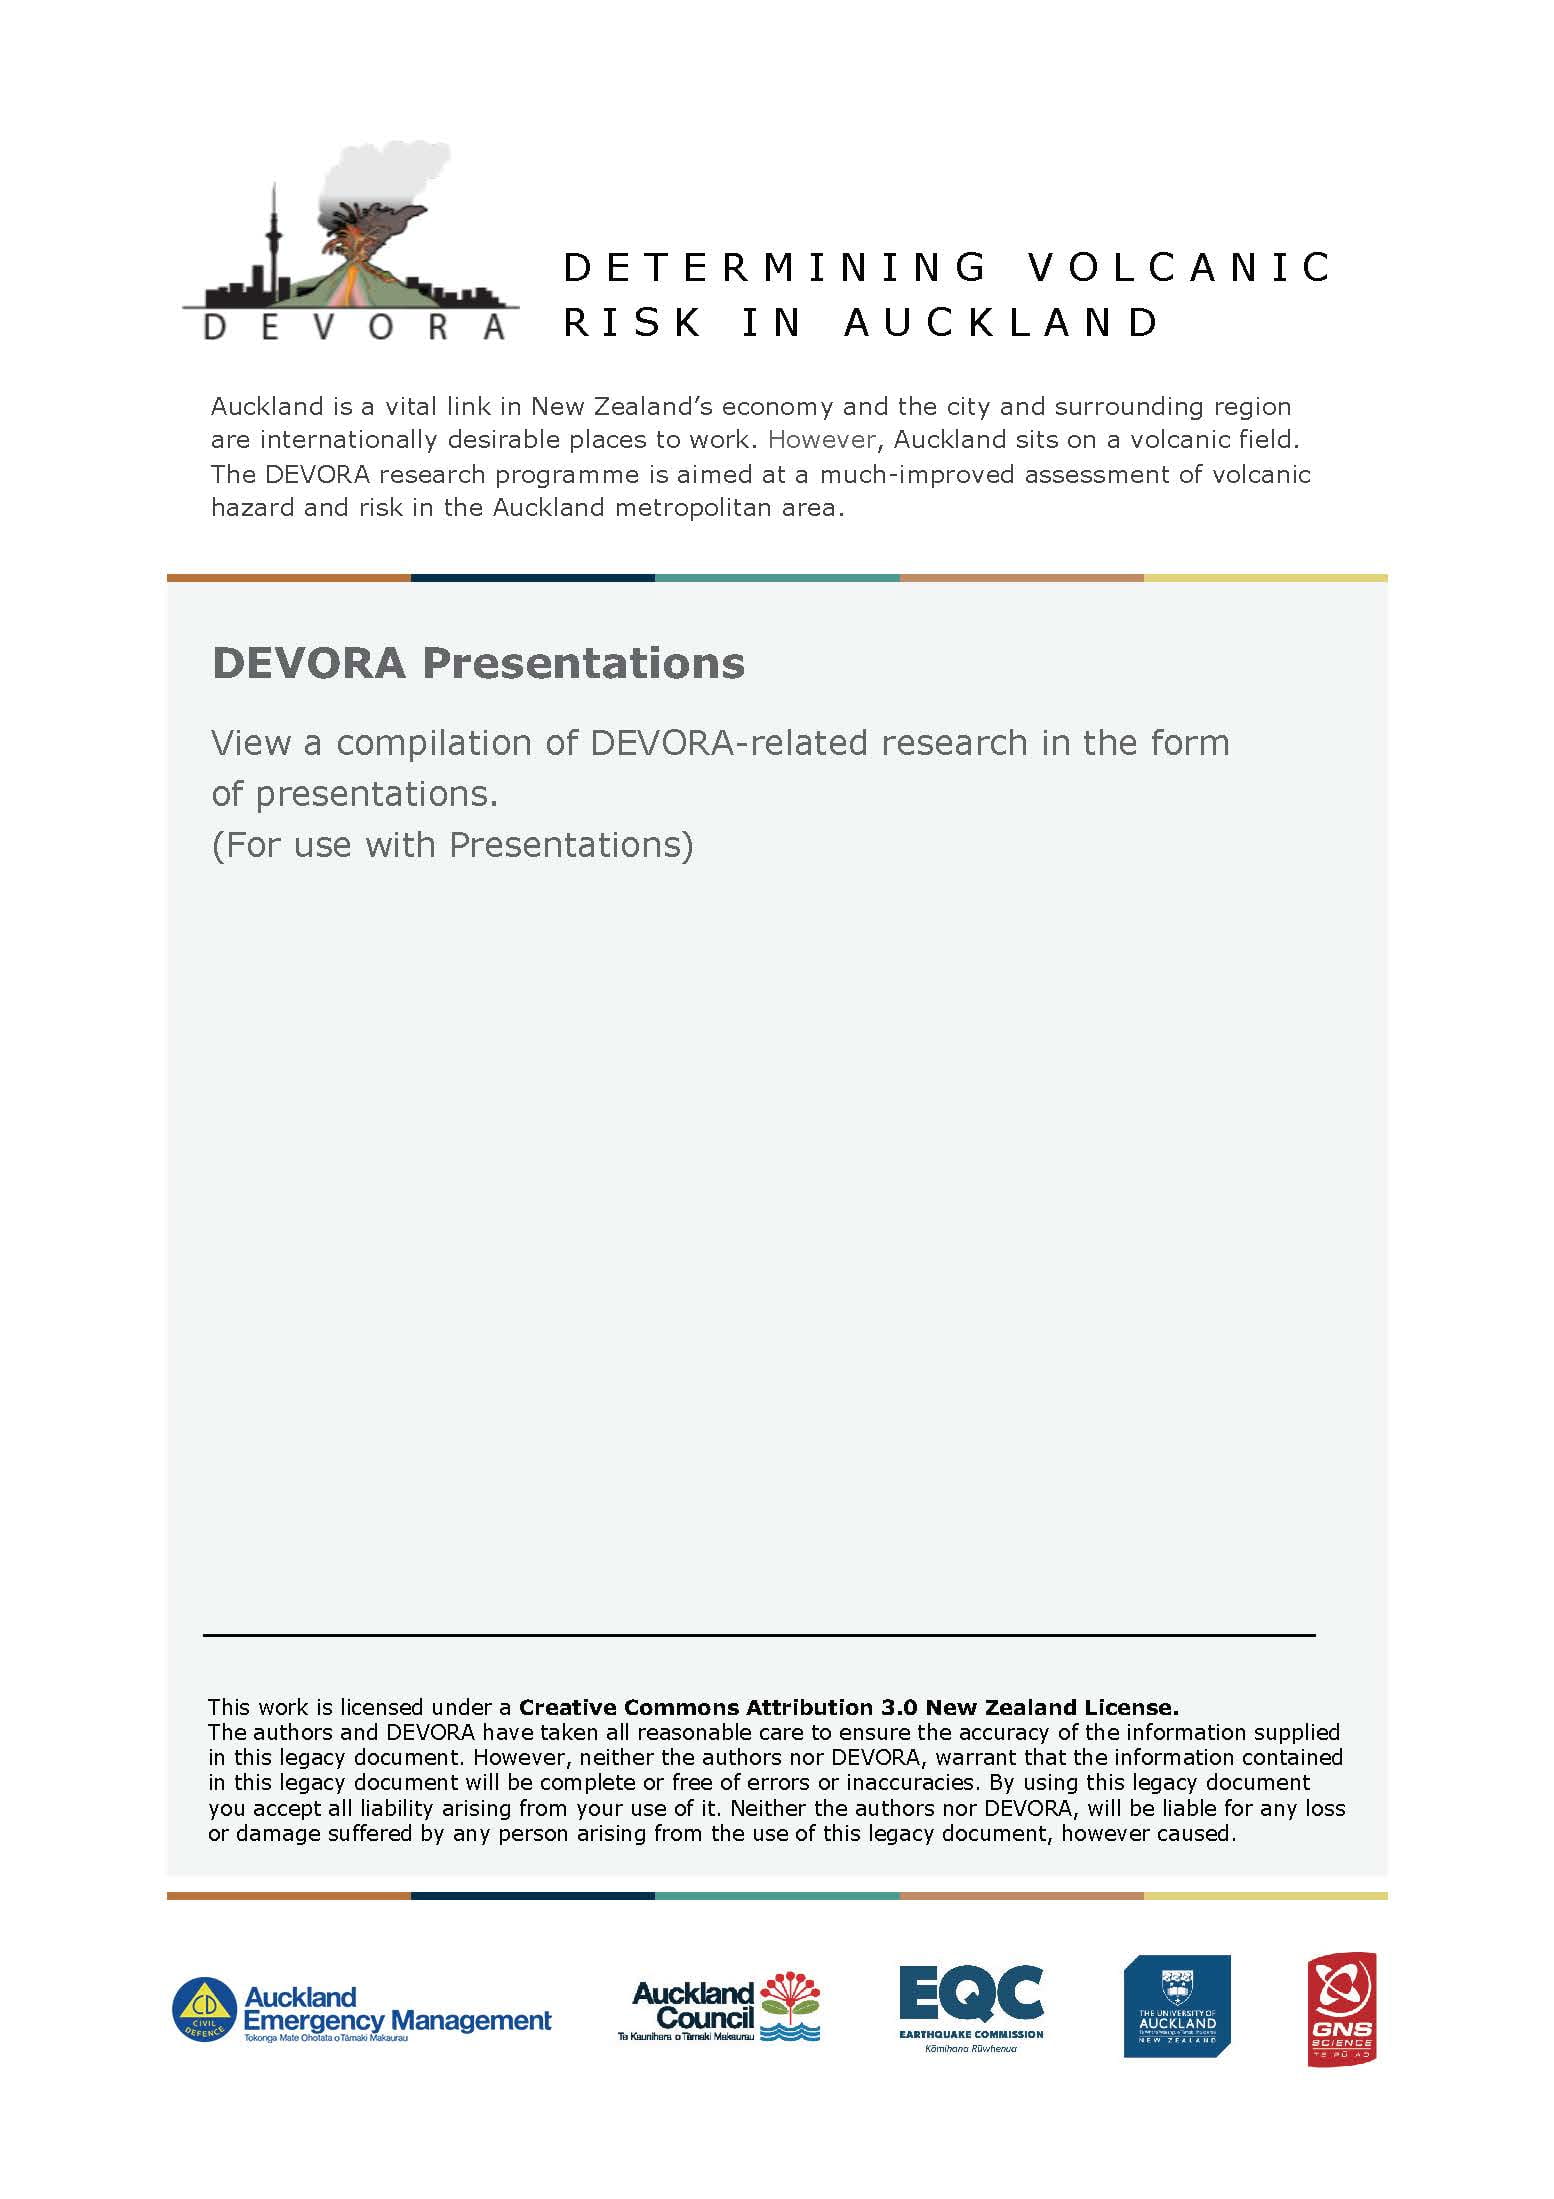 DEVORA Presentations Cover